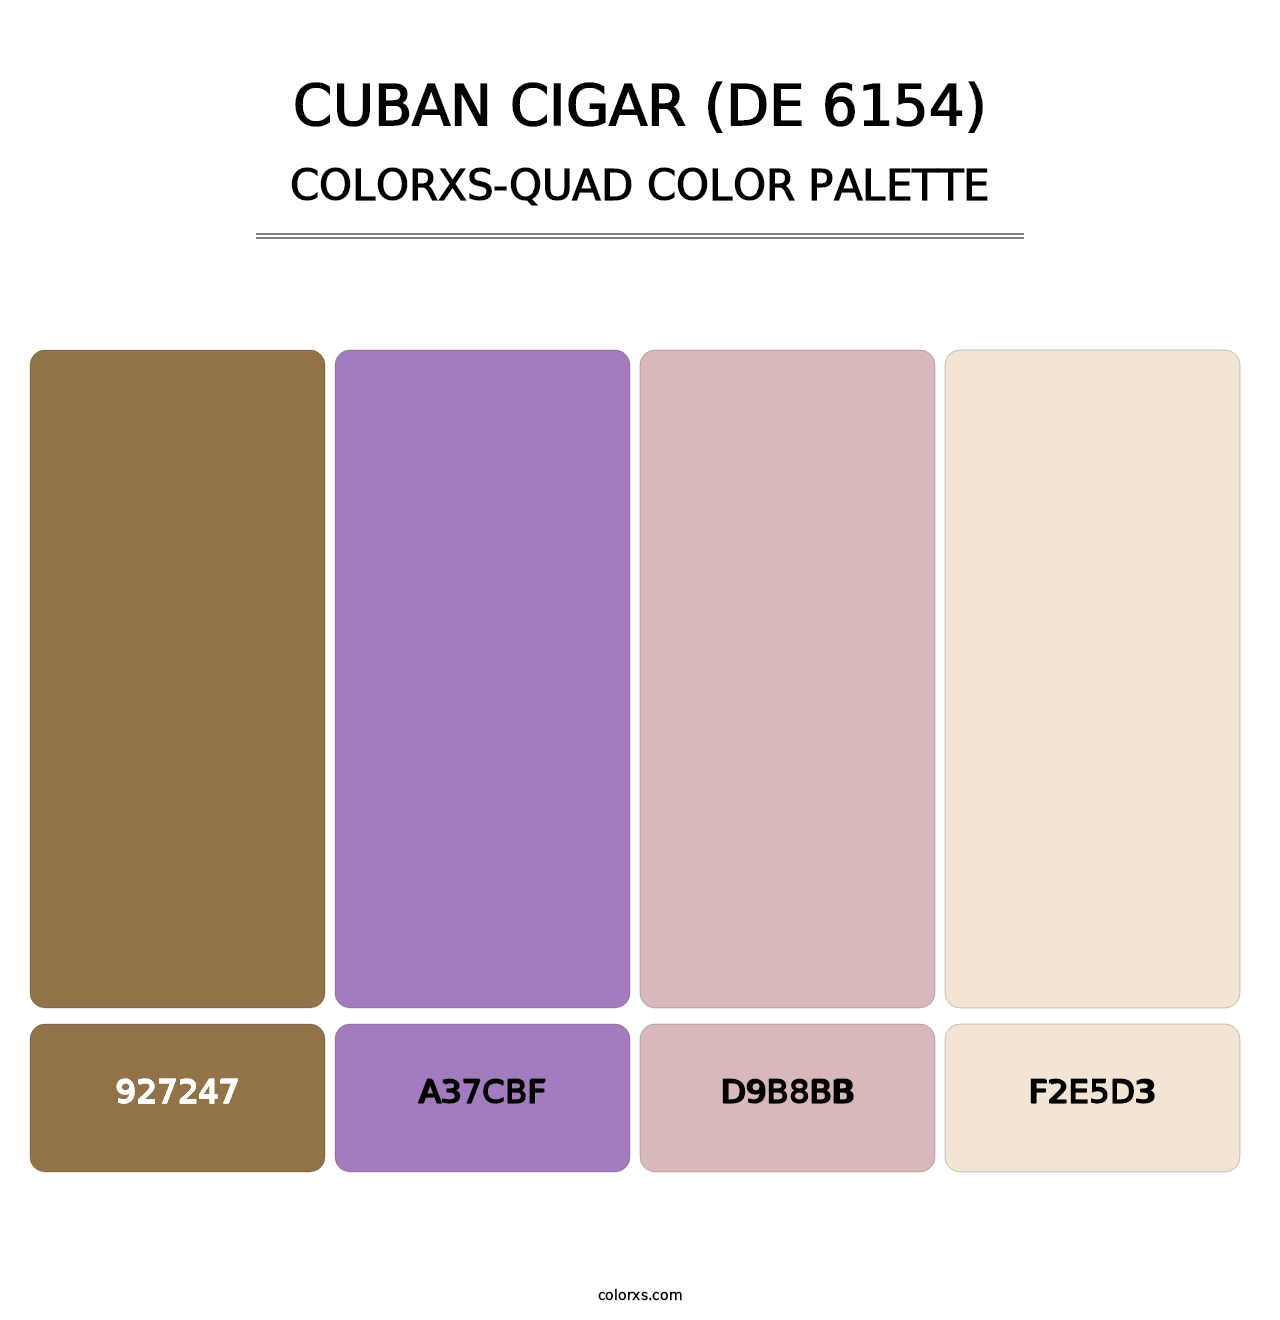 Cuban Cigar (DE 6154) - Colorxs Quad Palette